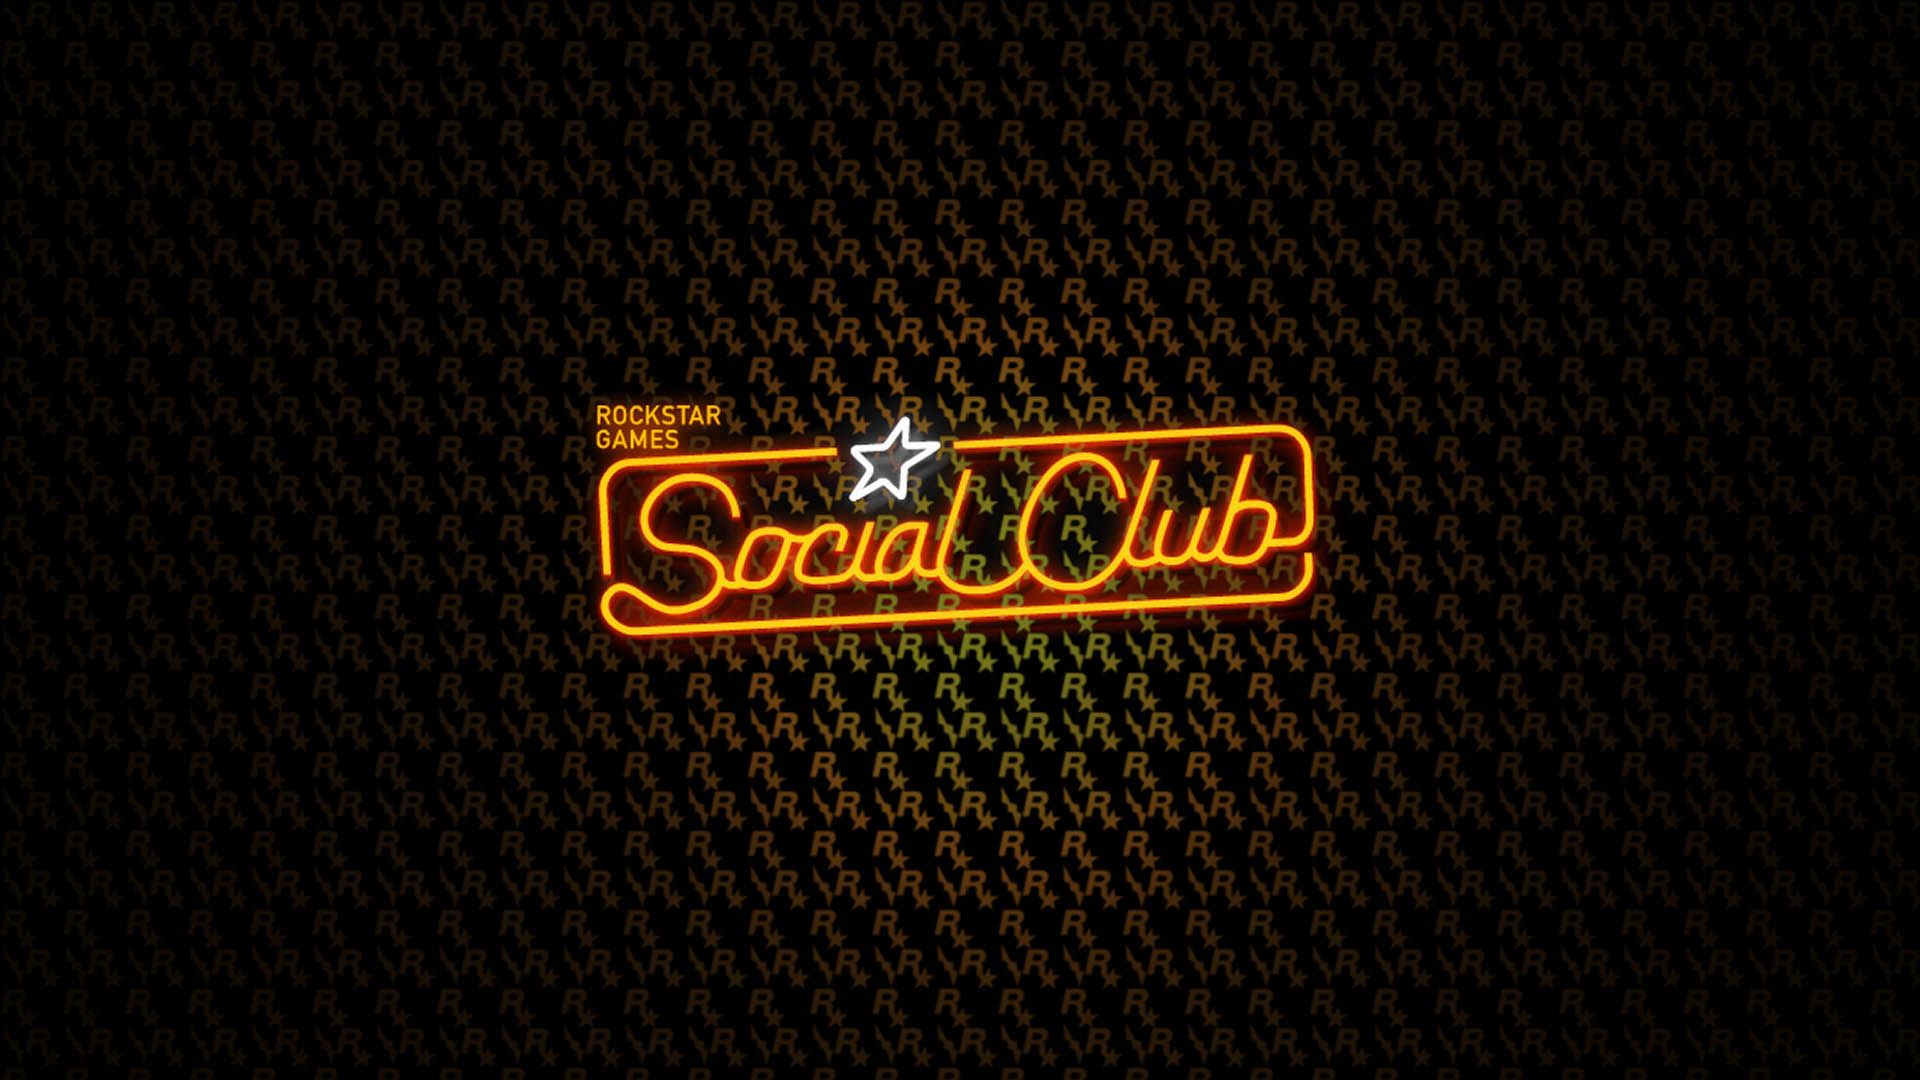 Rockstar's Social Club gets more Social – Destructoid